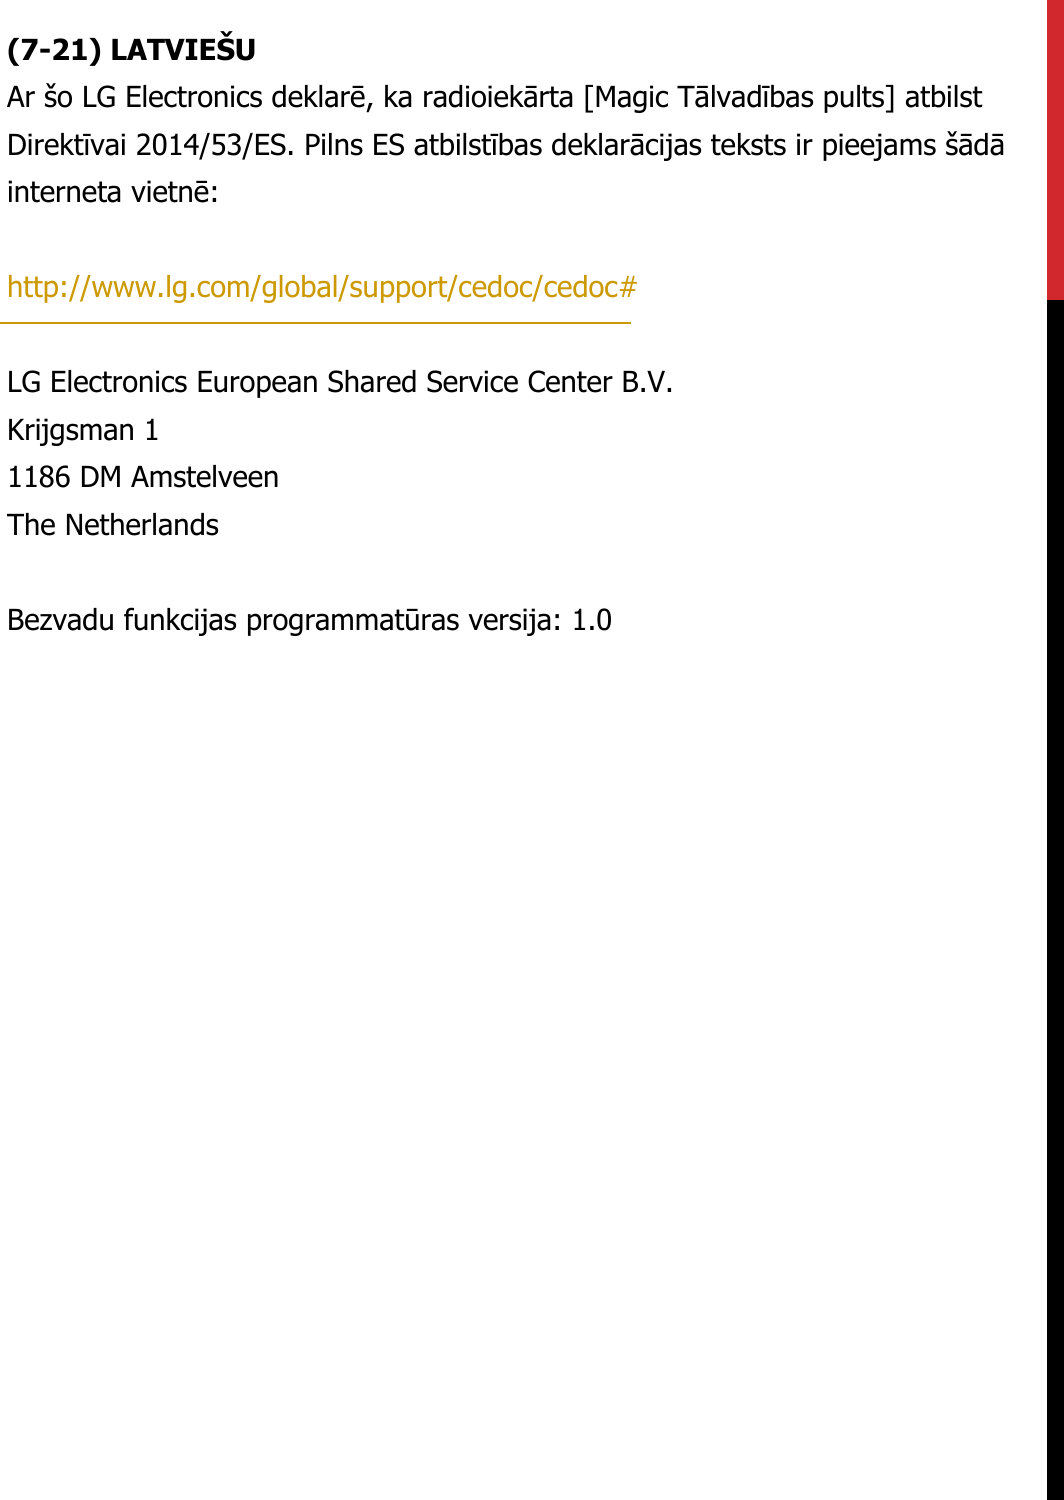 (7-21) LATVIEŠUAr šo LG Electronics deklarē, ka radioiekārta [Magic Tālvadības pults] atbilst Direktīvai 2014/53/ES. Pilns ES atbilstības deklarācijas teksts ir pieejams šādā interneta vietnē:   http://www.lg.com/global/support/cedoc/cedoc#   LG Electronics European Shared Service Center B.V.  Krijgsman 1  1186 DM Amstelveen  The Netherlands   Bezvadu funkcijas programmatūras versija: 1.0